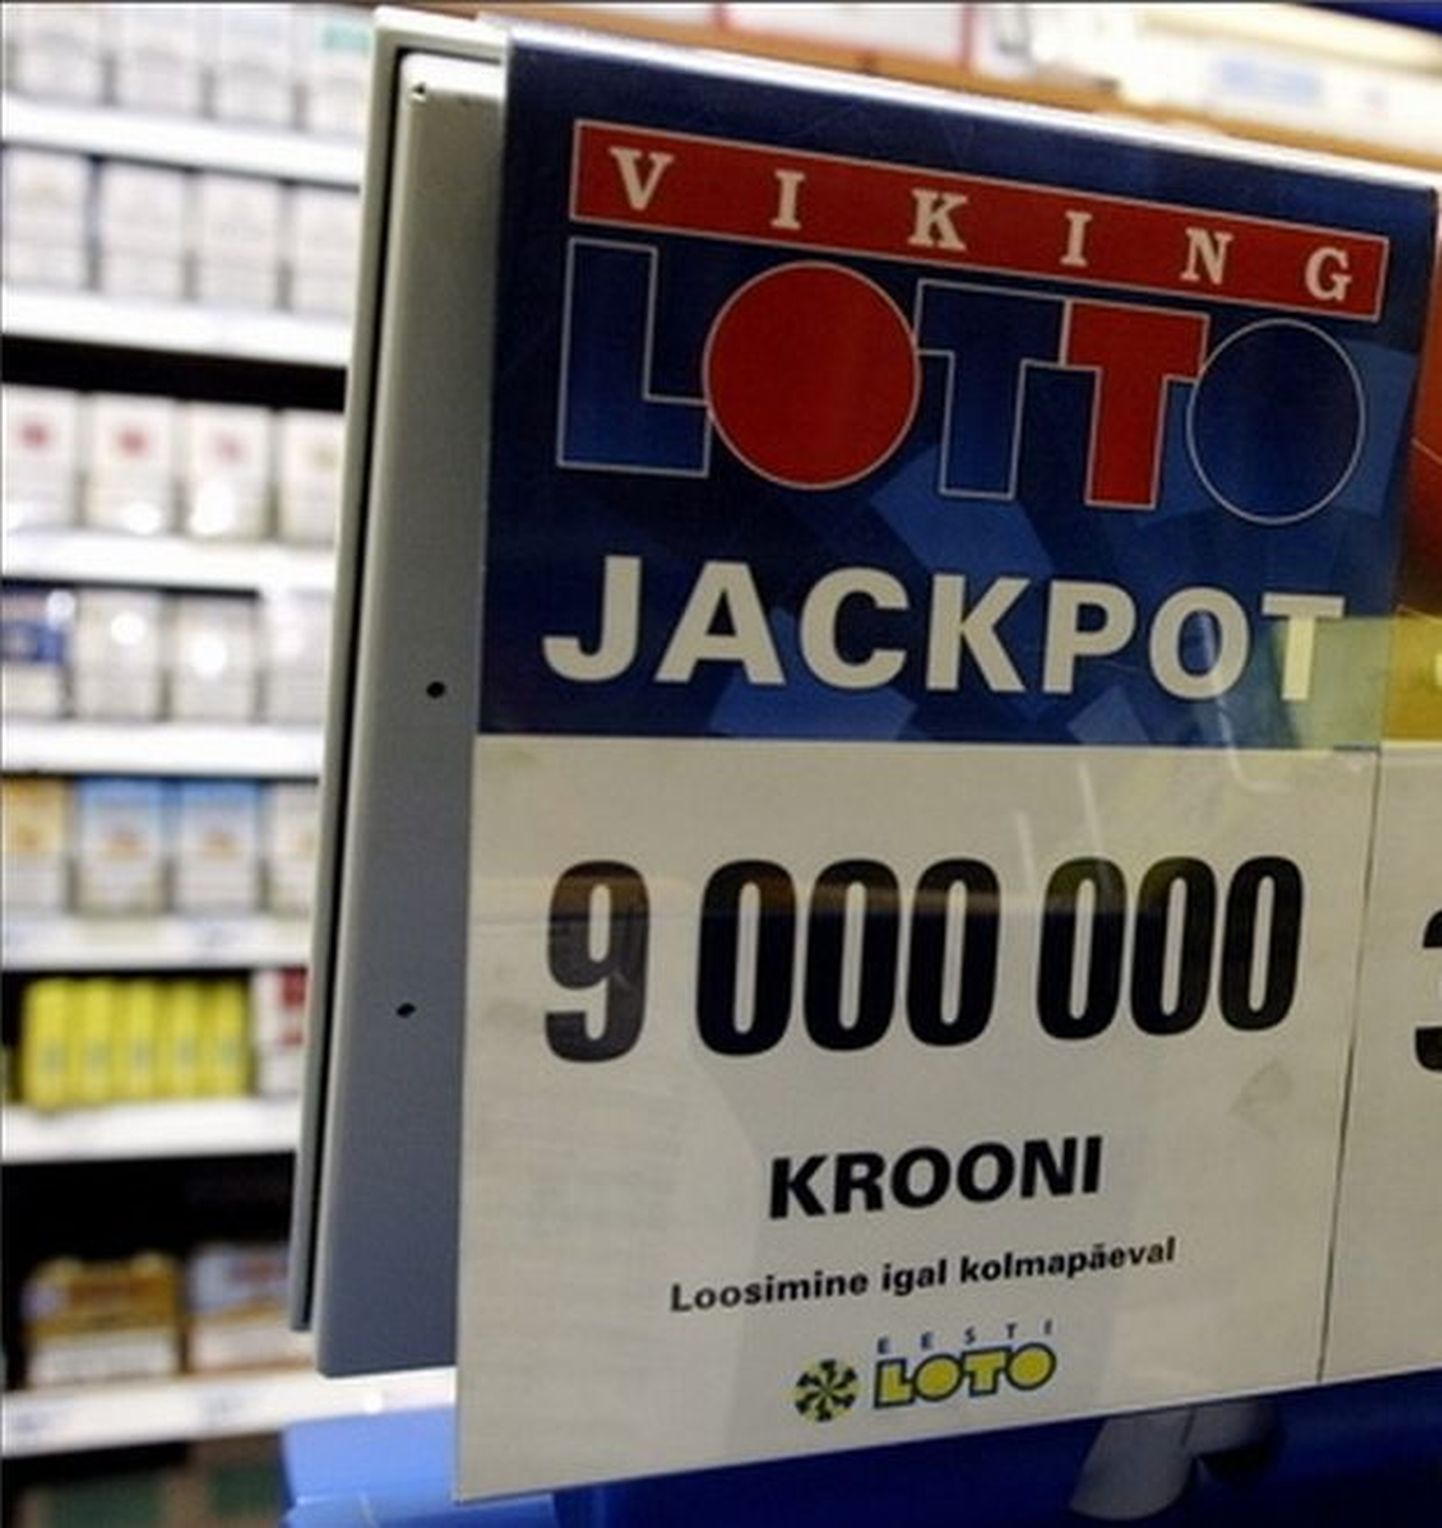 Реклама лотереи Viking Lotto. Более 9 миллионов крон в Эстонии еще никто не выигрывал.